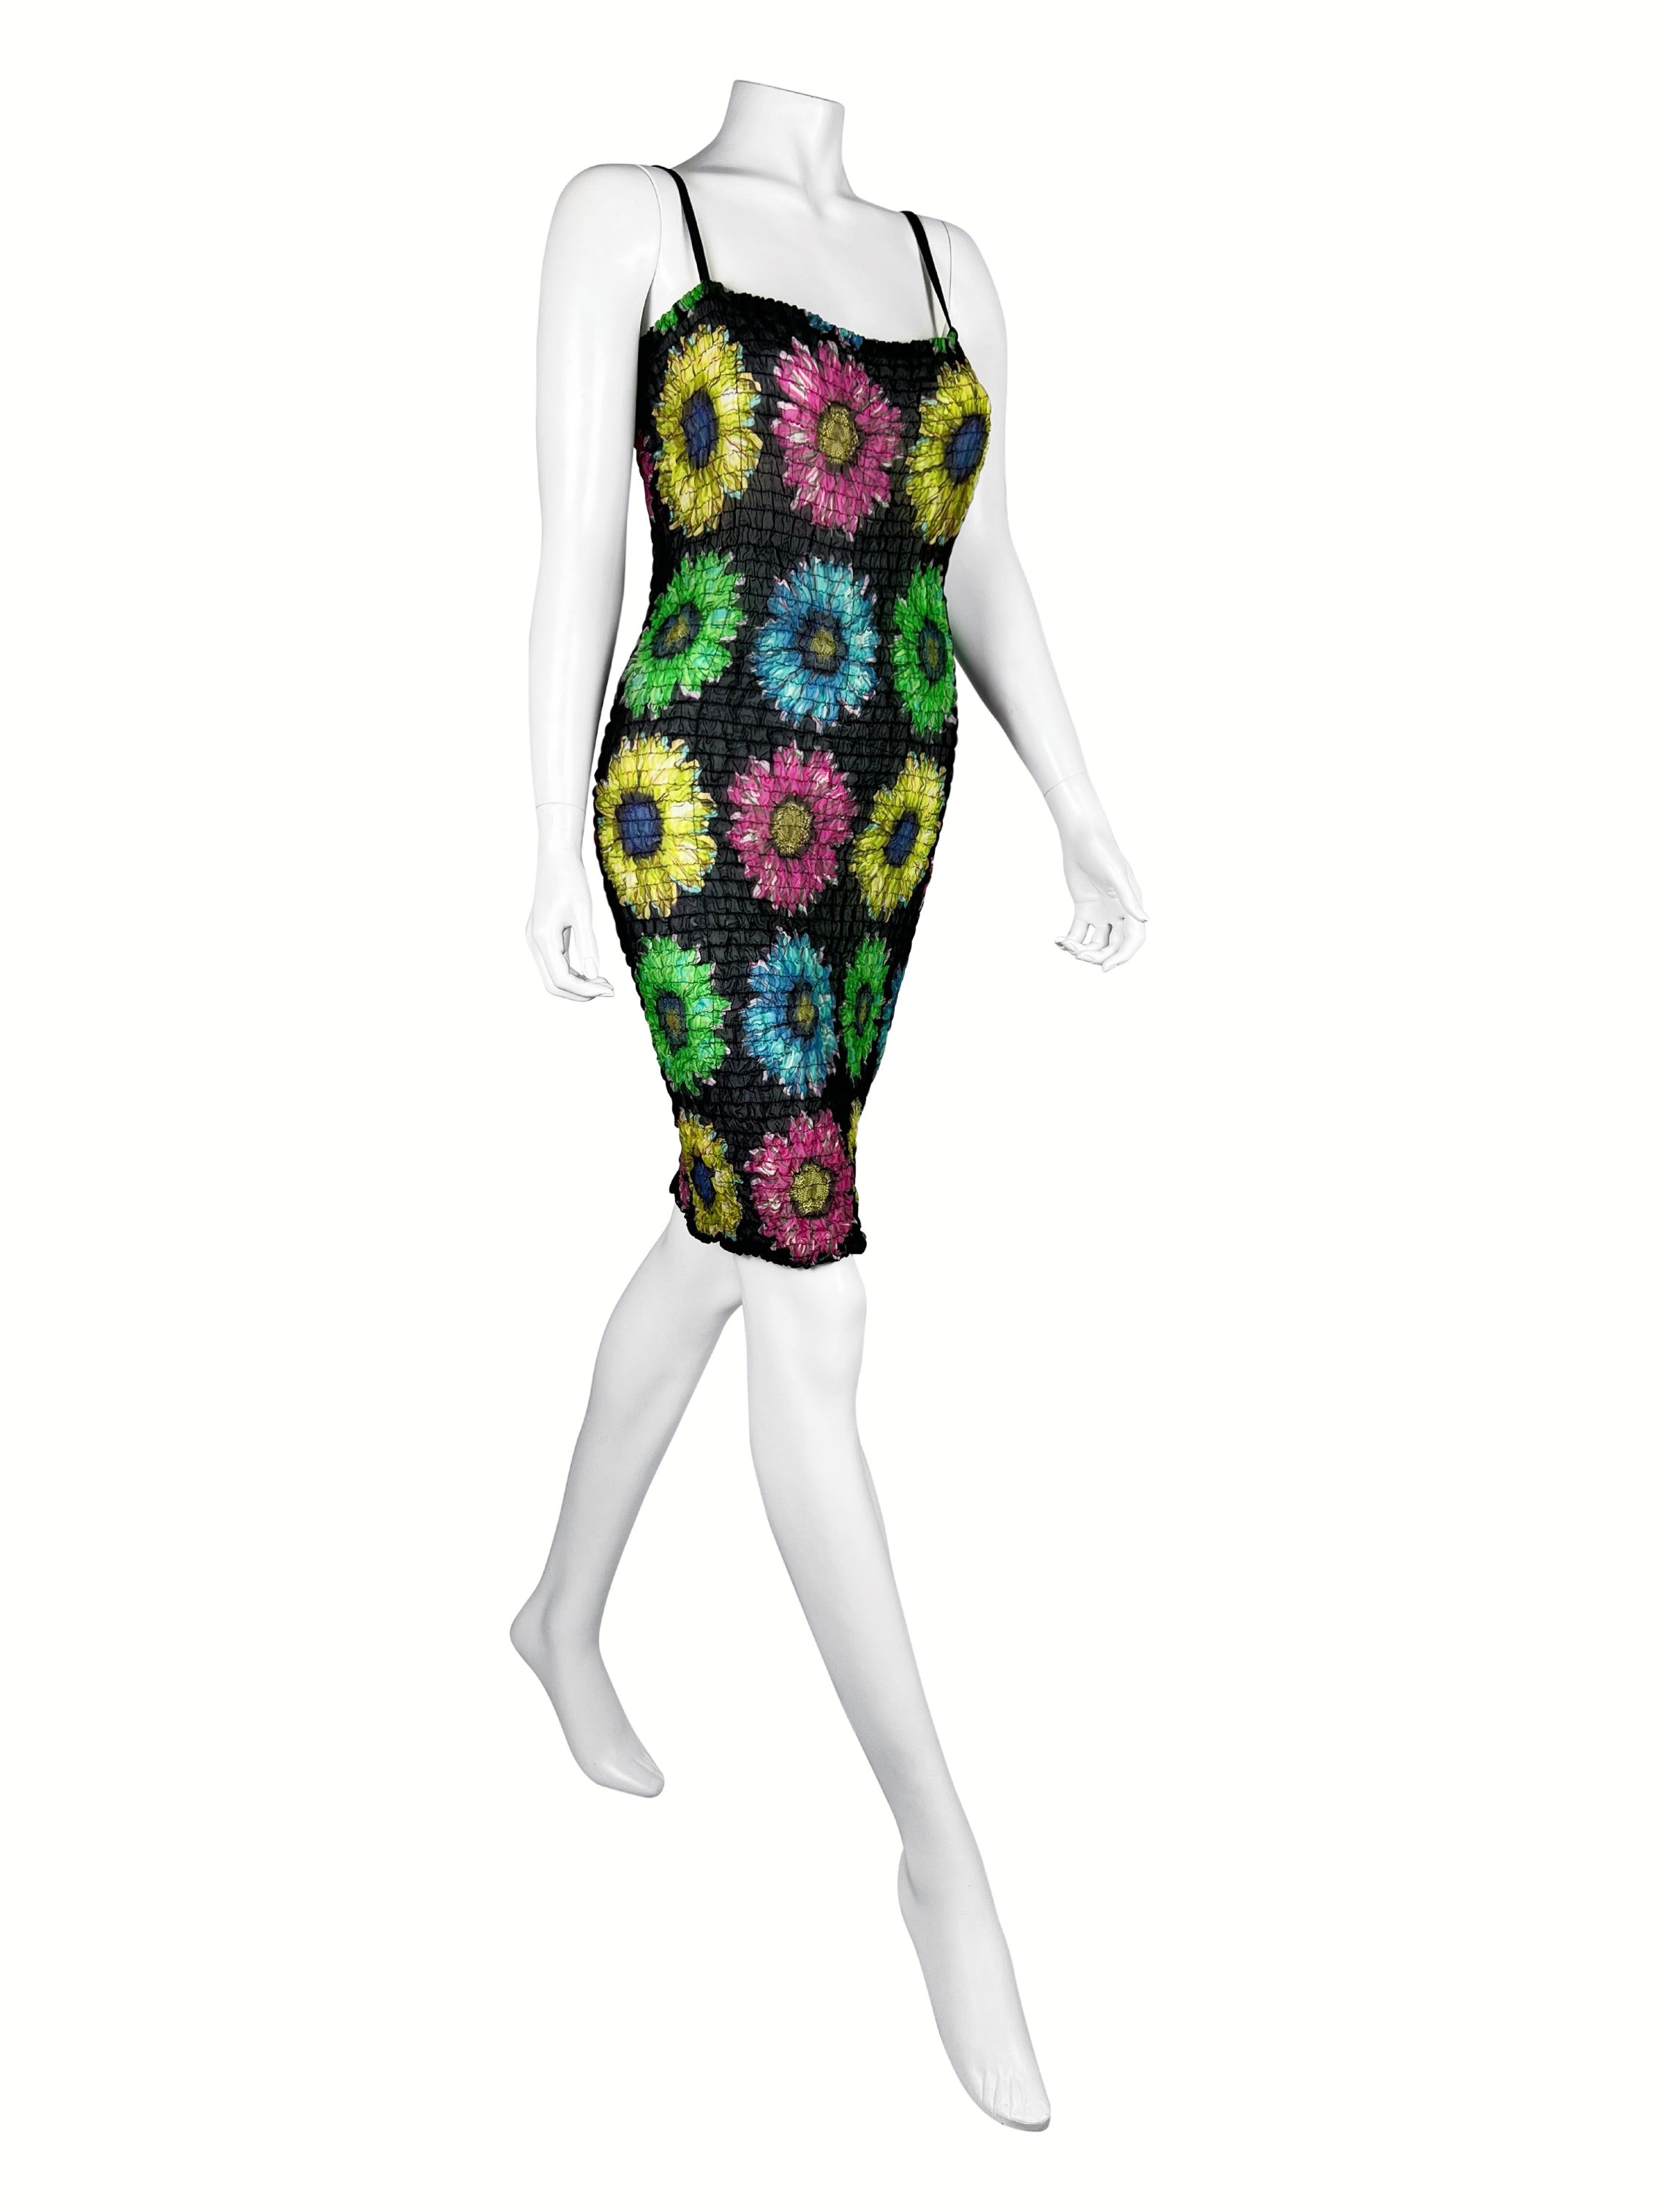 Versace Spring 2002 Sunflower Print Dress